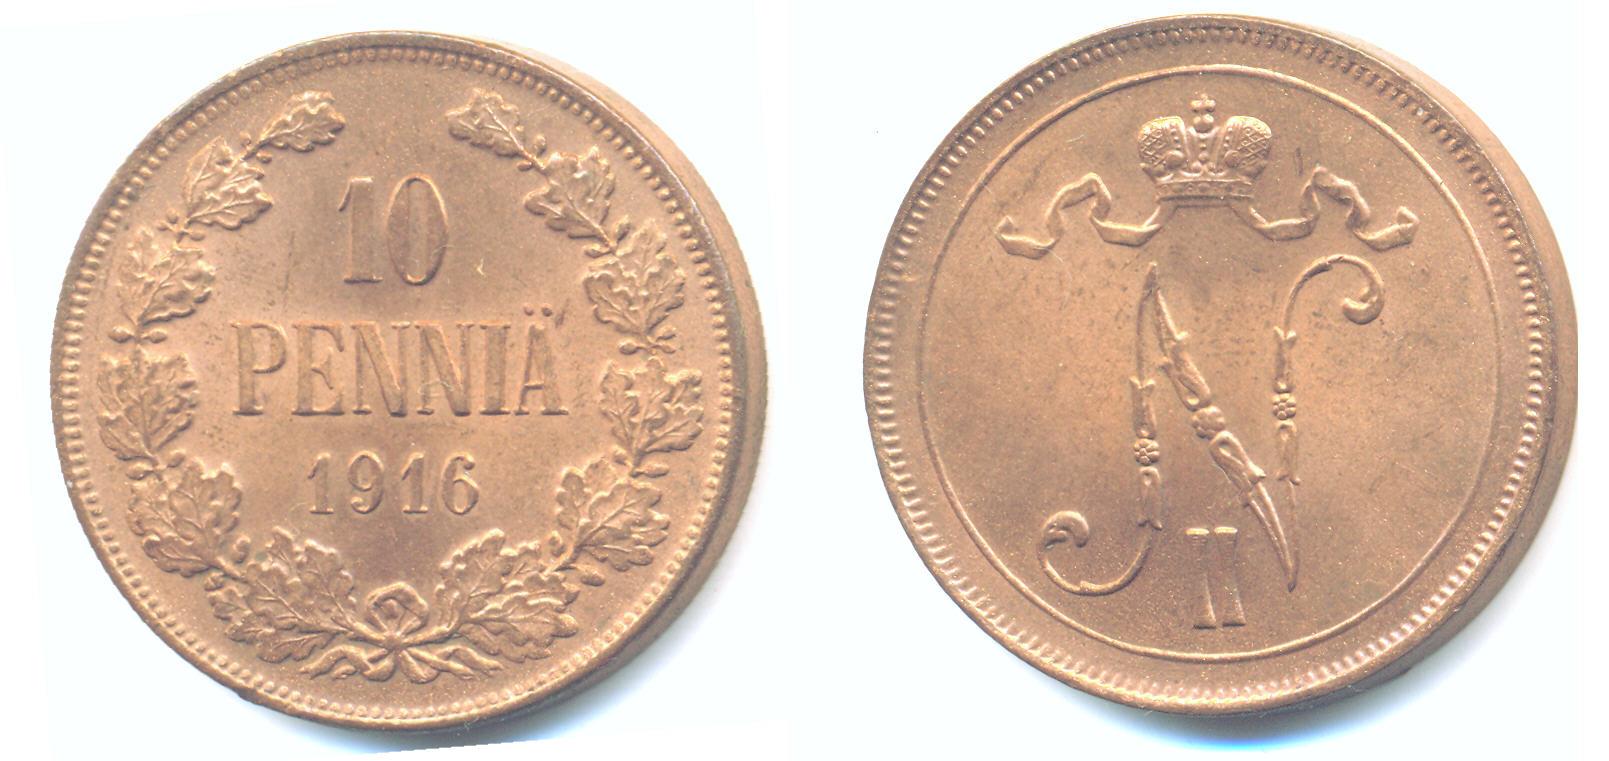 Foto Finnland 10 PenniÄ unter Nikolaus Ii, 1916,